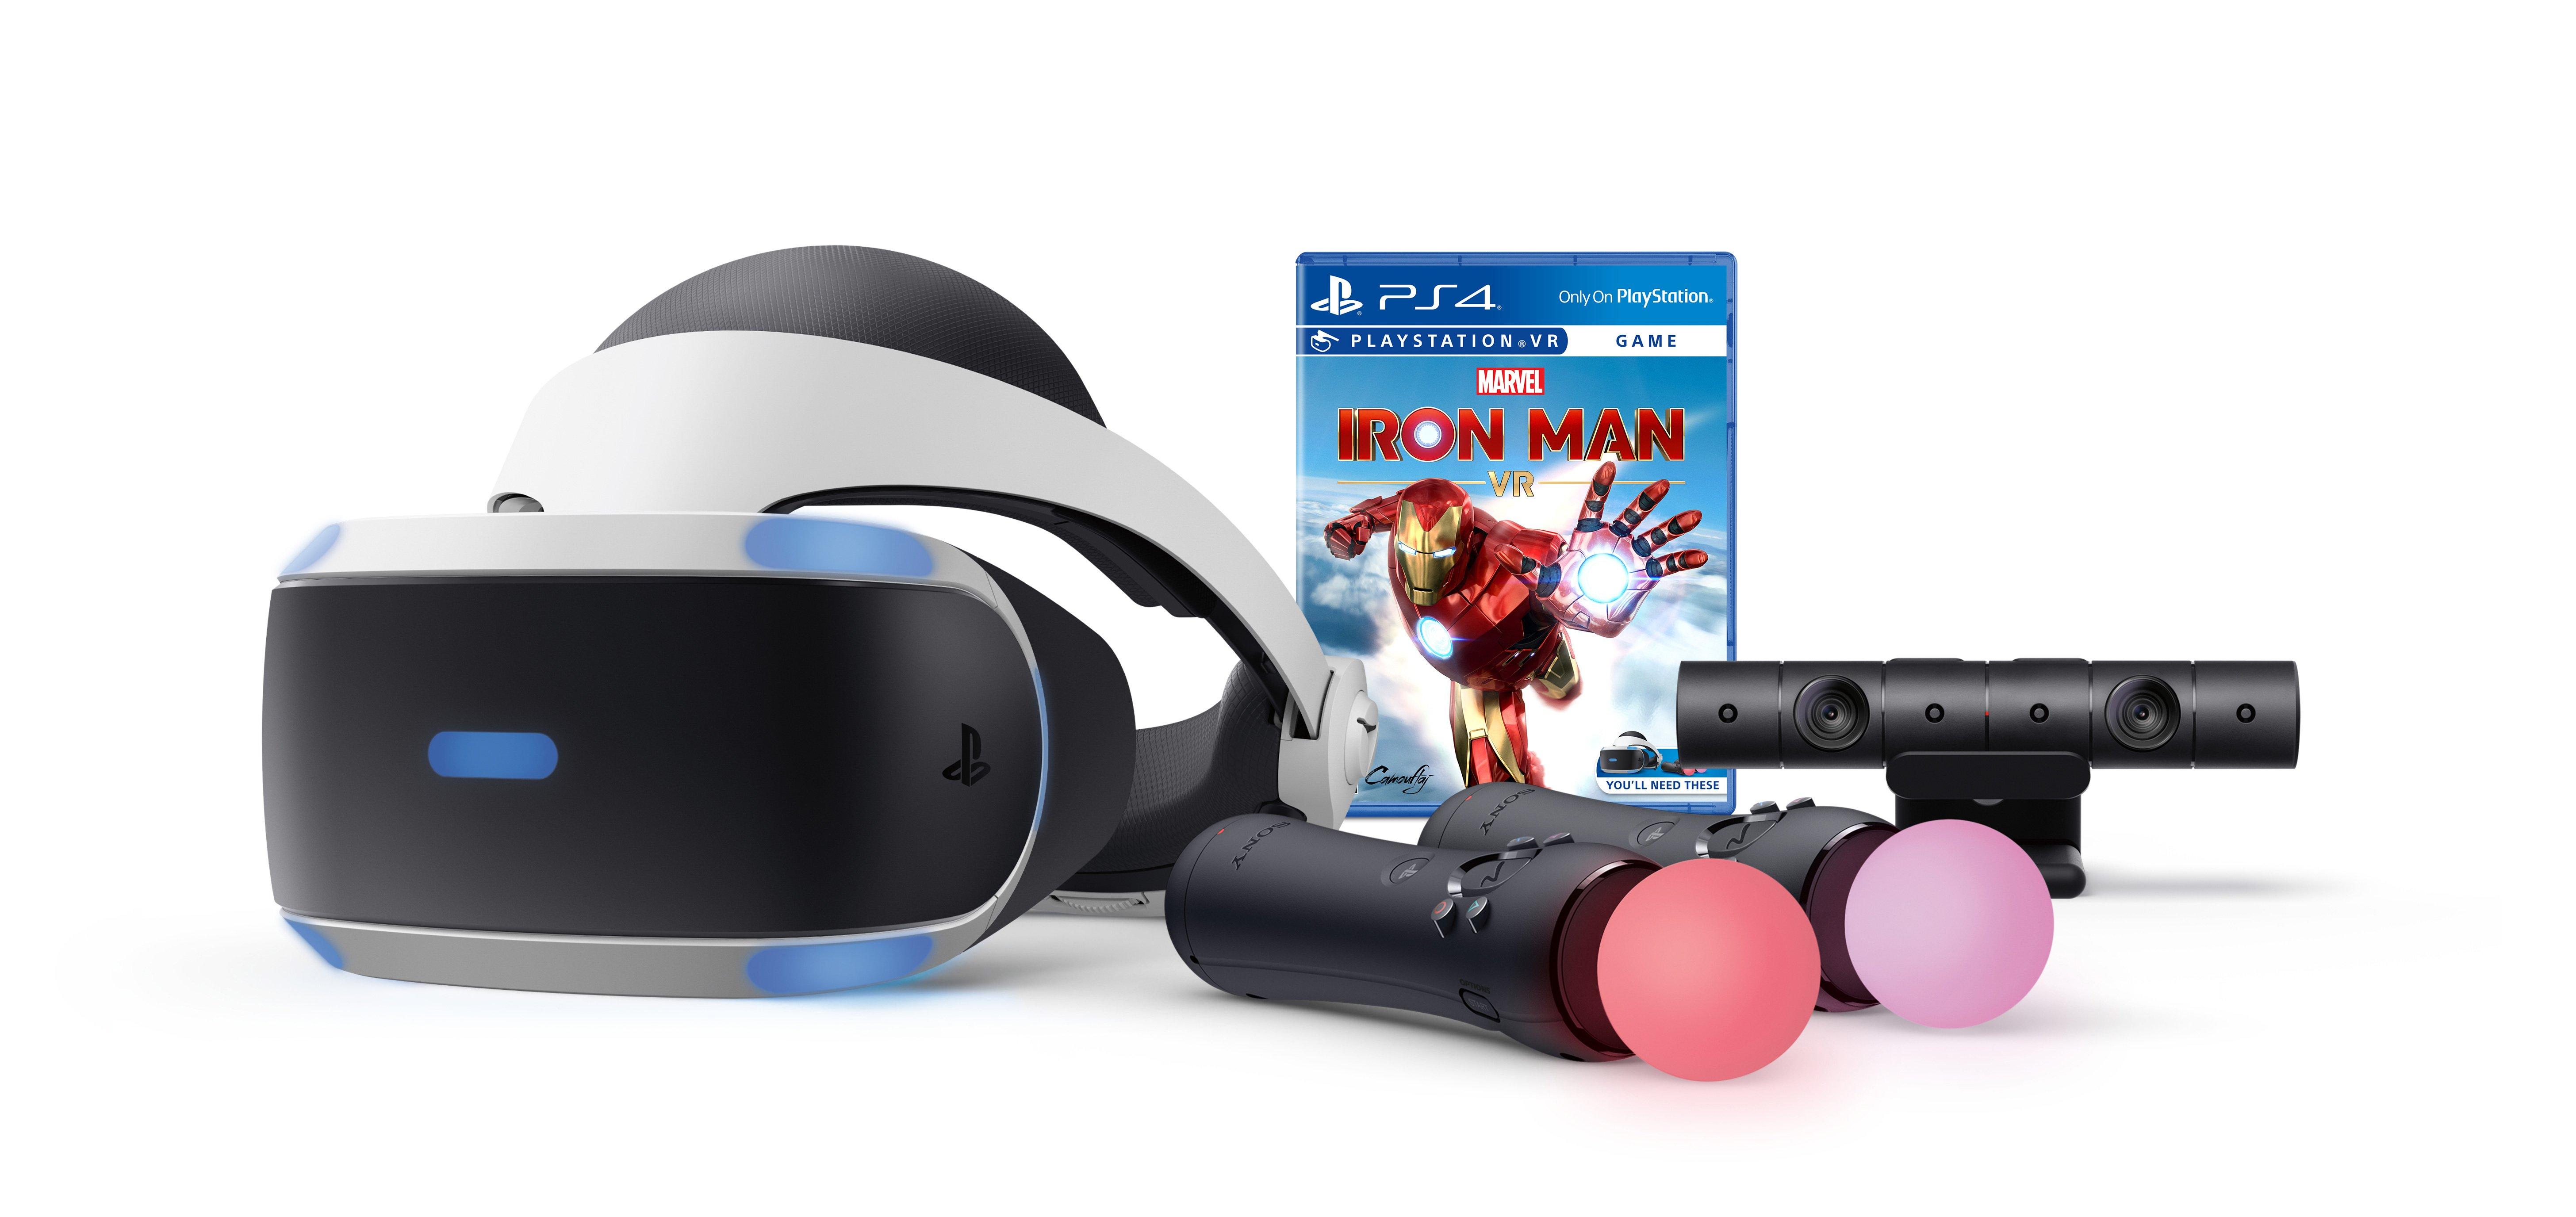 Reservere sundhed stå PlayStation VR Marvel's Iron Man VR Bundle - PlayStation 4 | PlayStation 4  | GameStop